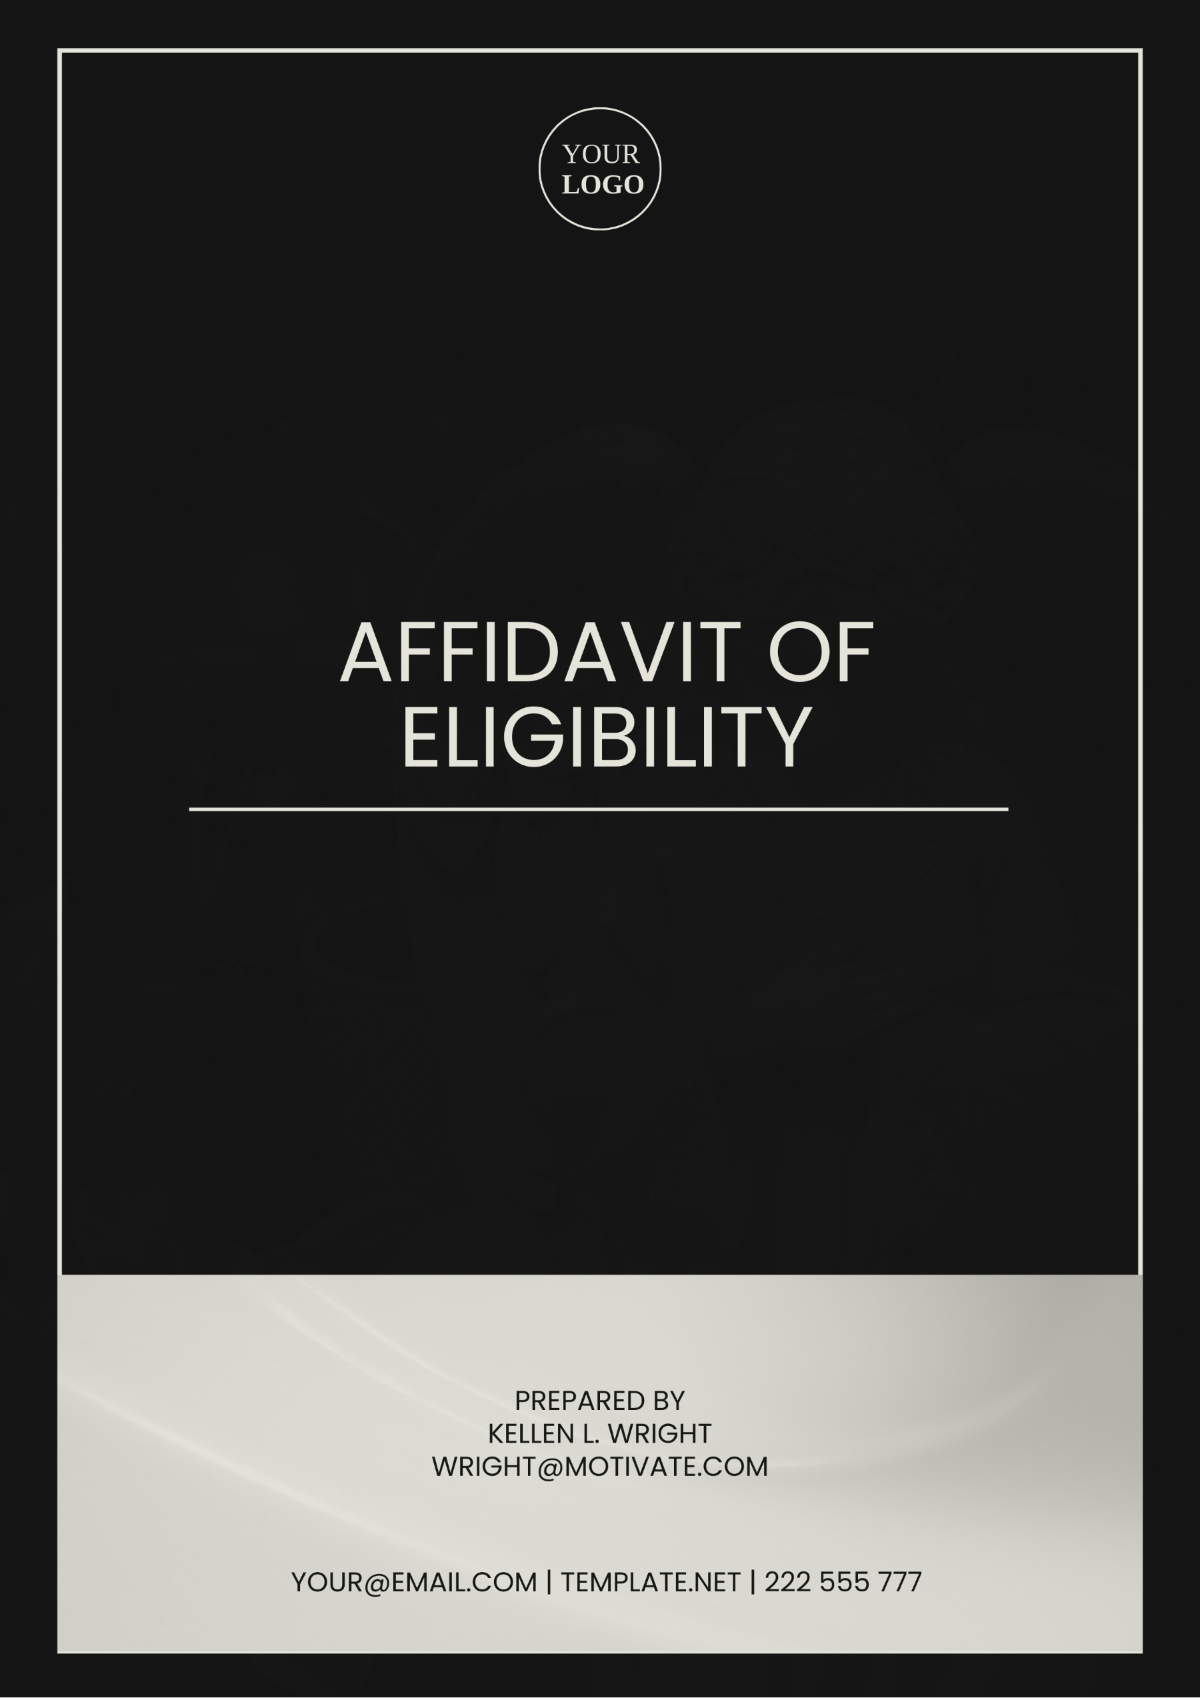 Affidavit of Eligibility Template